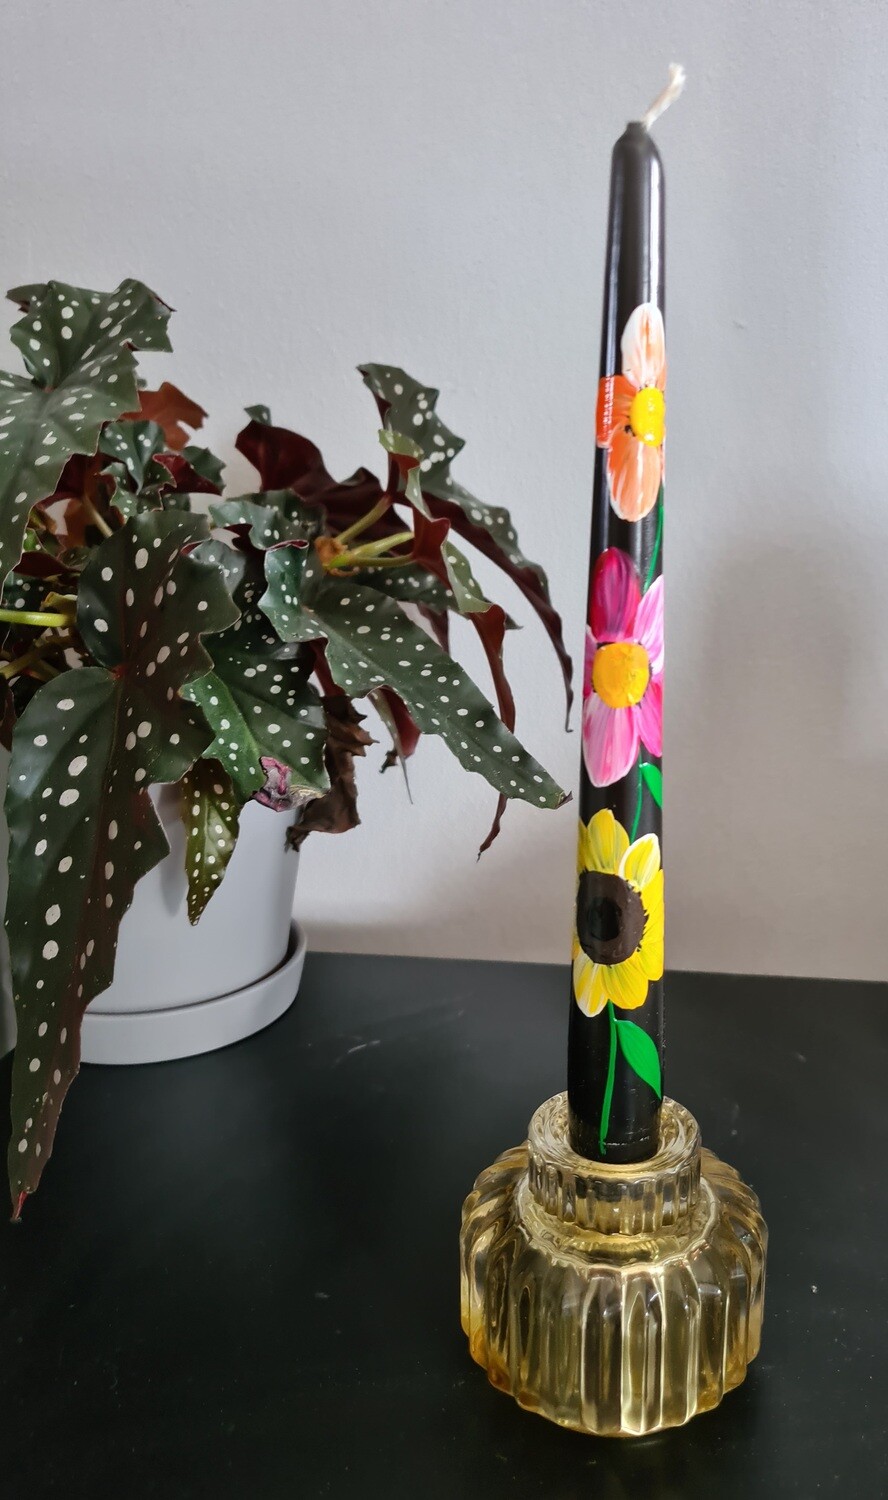 Glazen kandelaar met unieke flower candle